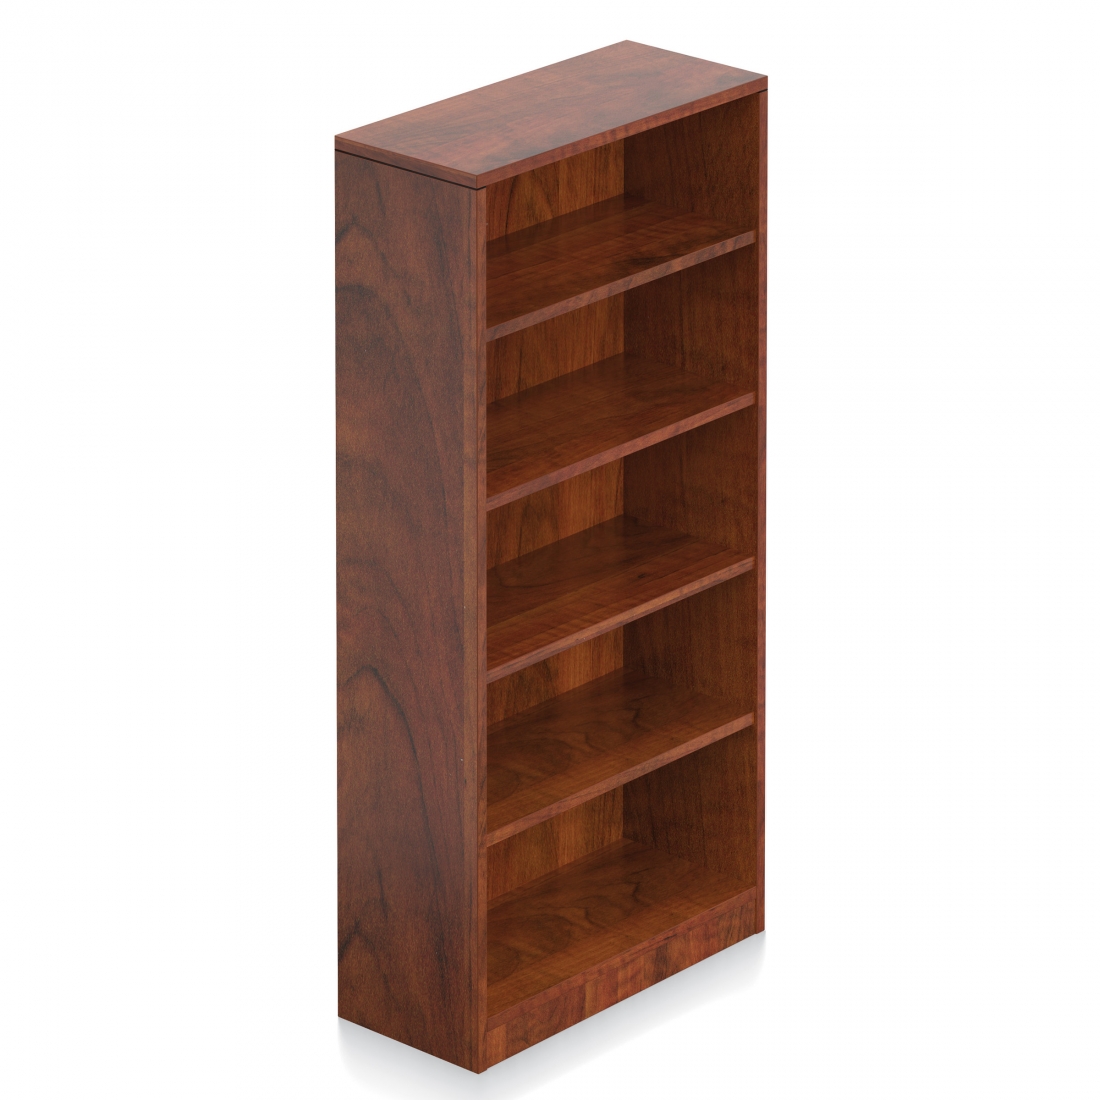 71”H 4 Shelf Bookcase